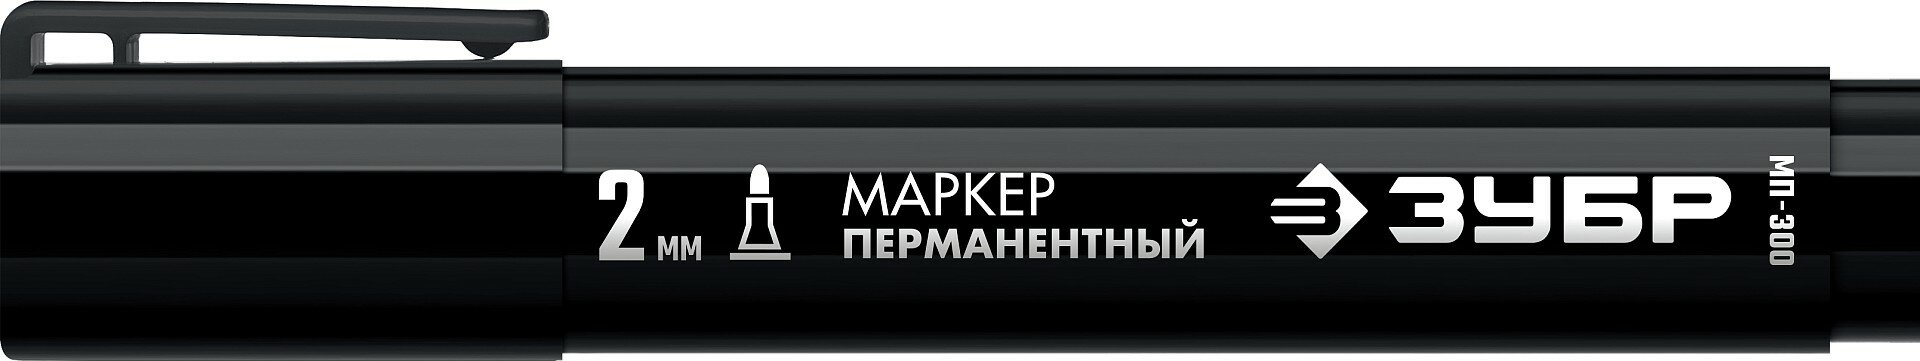 Маркер перманентный ЗУБР МП-300, 2 мм, заостренный, черный, Профессионал (06322-2)